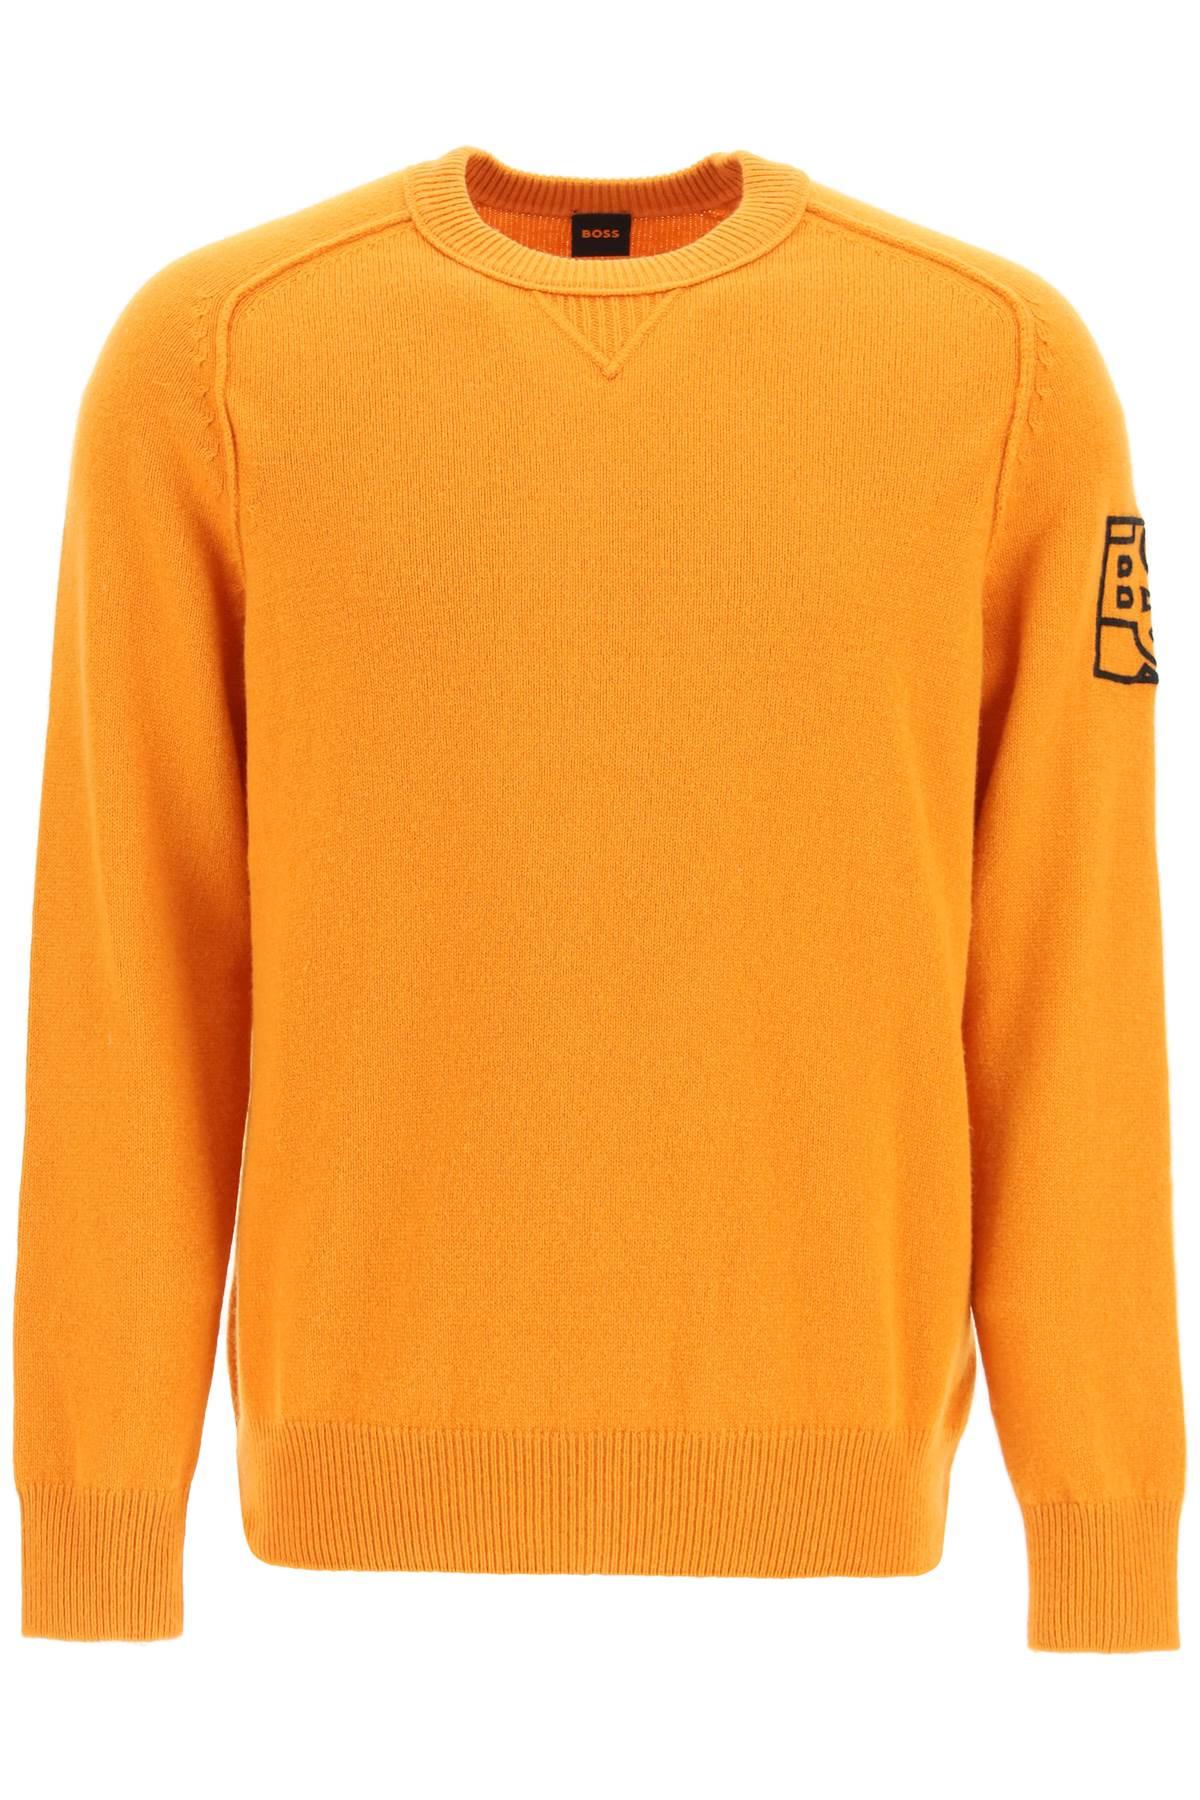 BOSS by HUGO BOSS Shaken Logo Embroidery Sweater in Orange for | Lyst